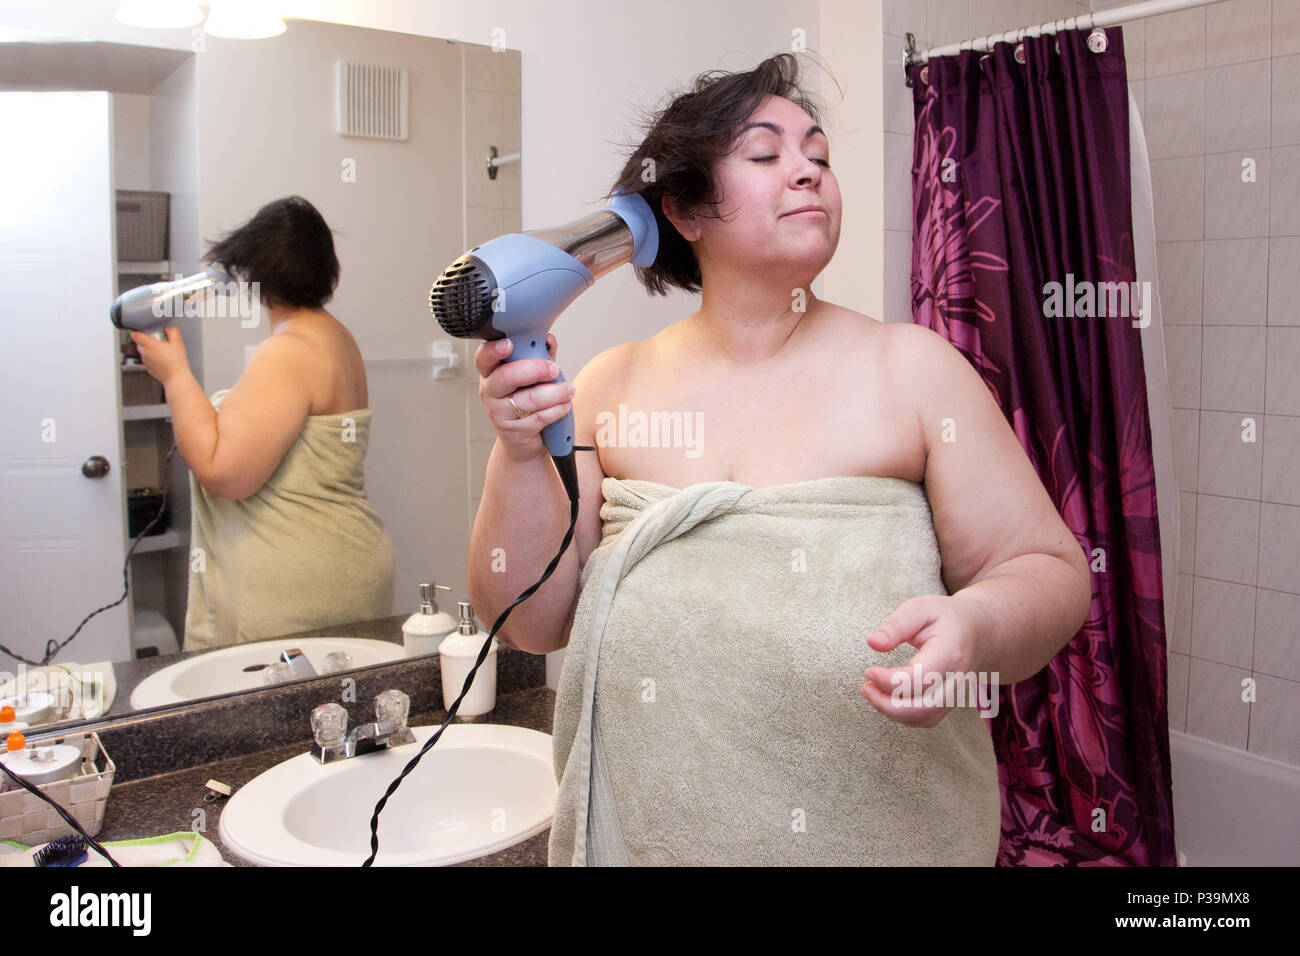 El secado de cabello envuelto en una toalla, una mujer permanece en su cuarto de baño, preparándose para salir Foto de stock